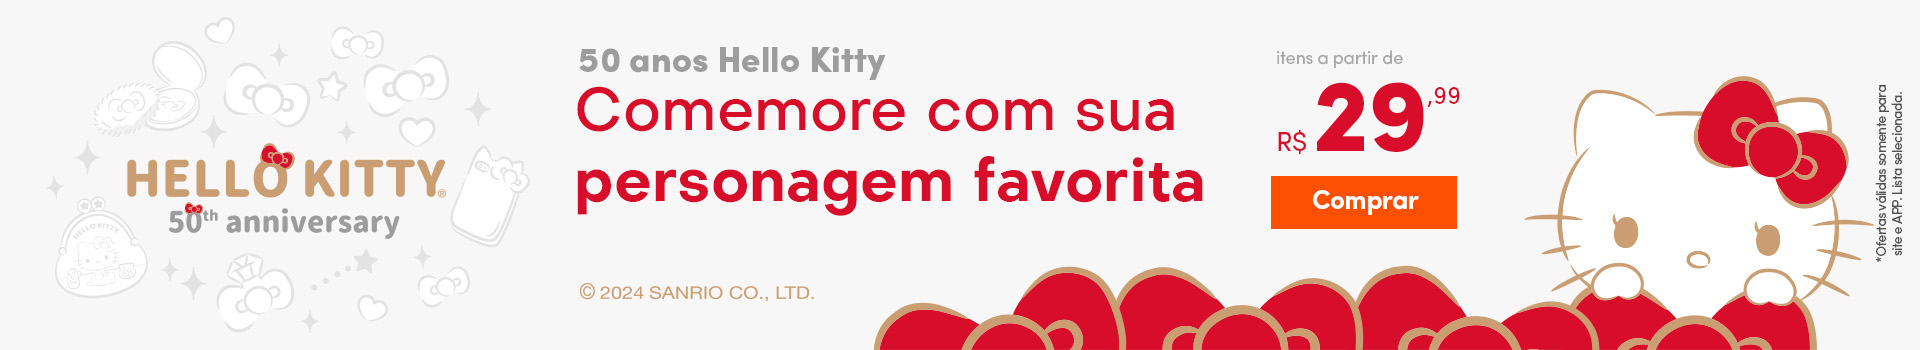 50 anos Hello Kitty - Comemore com sua personagem favorita a partir de R$29,99